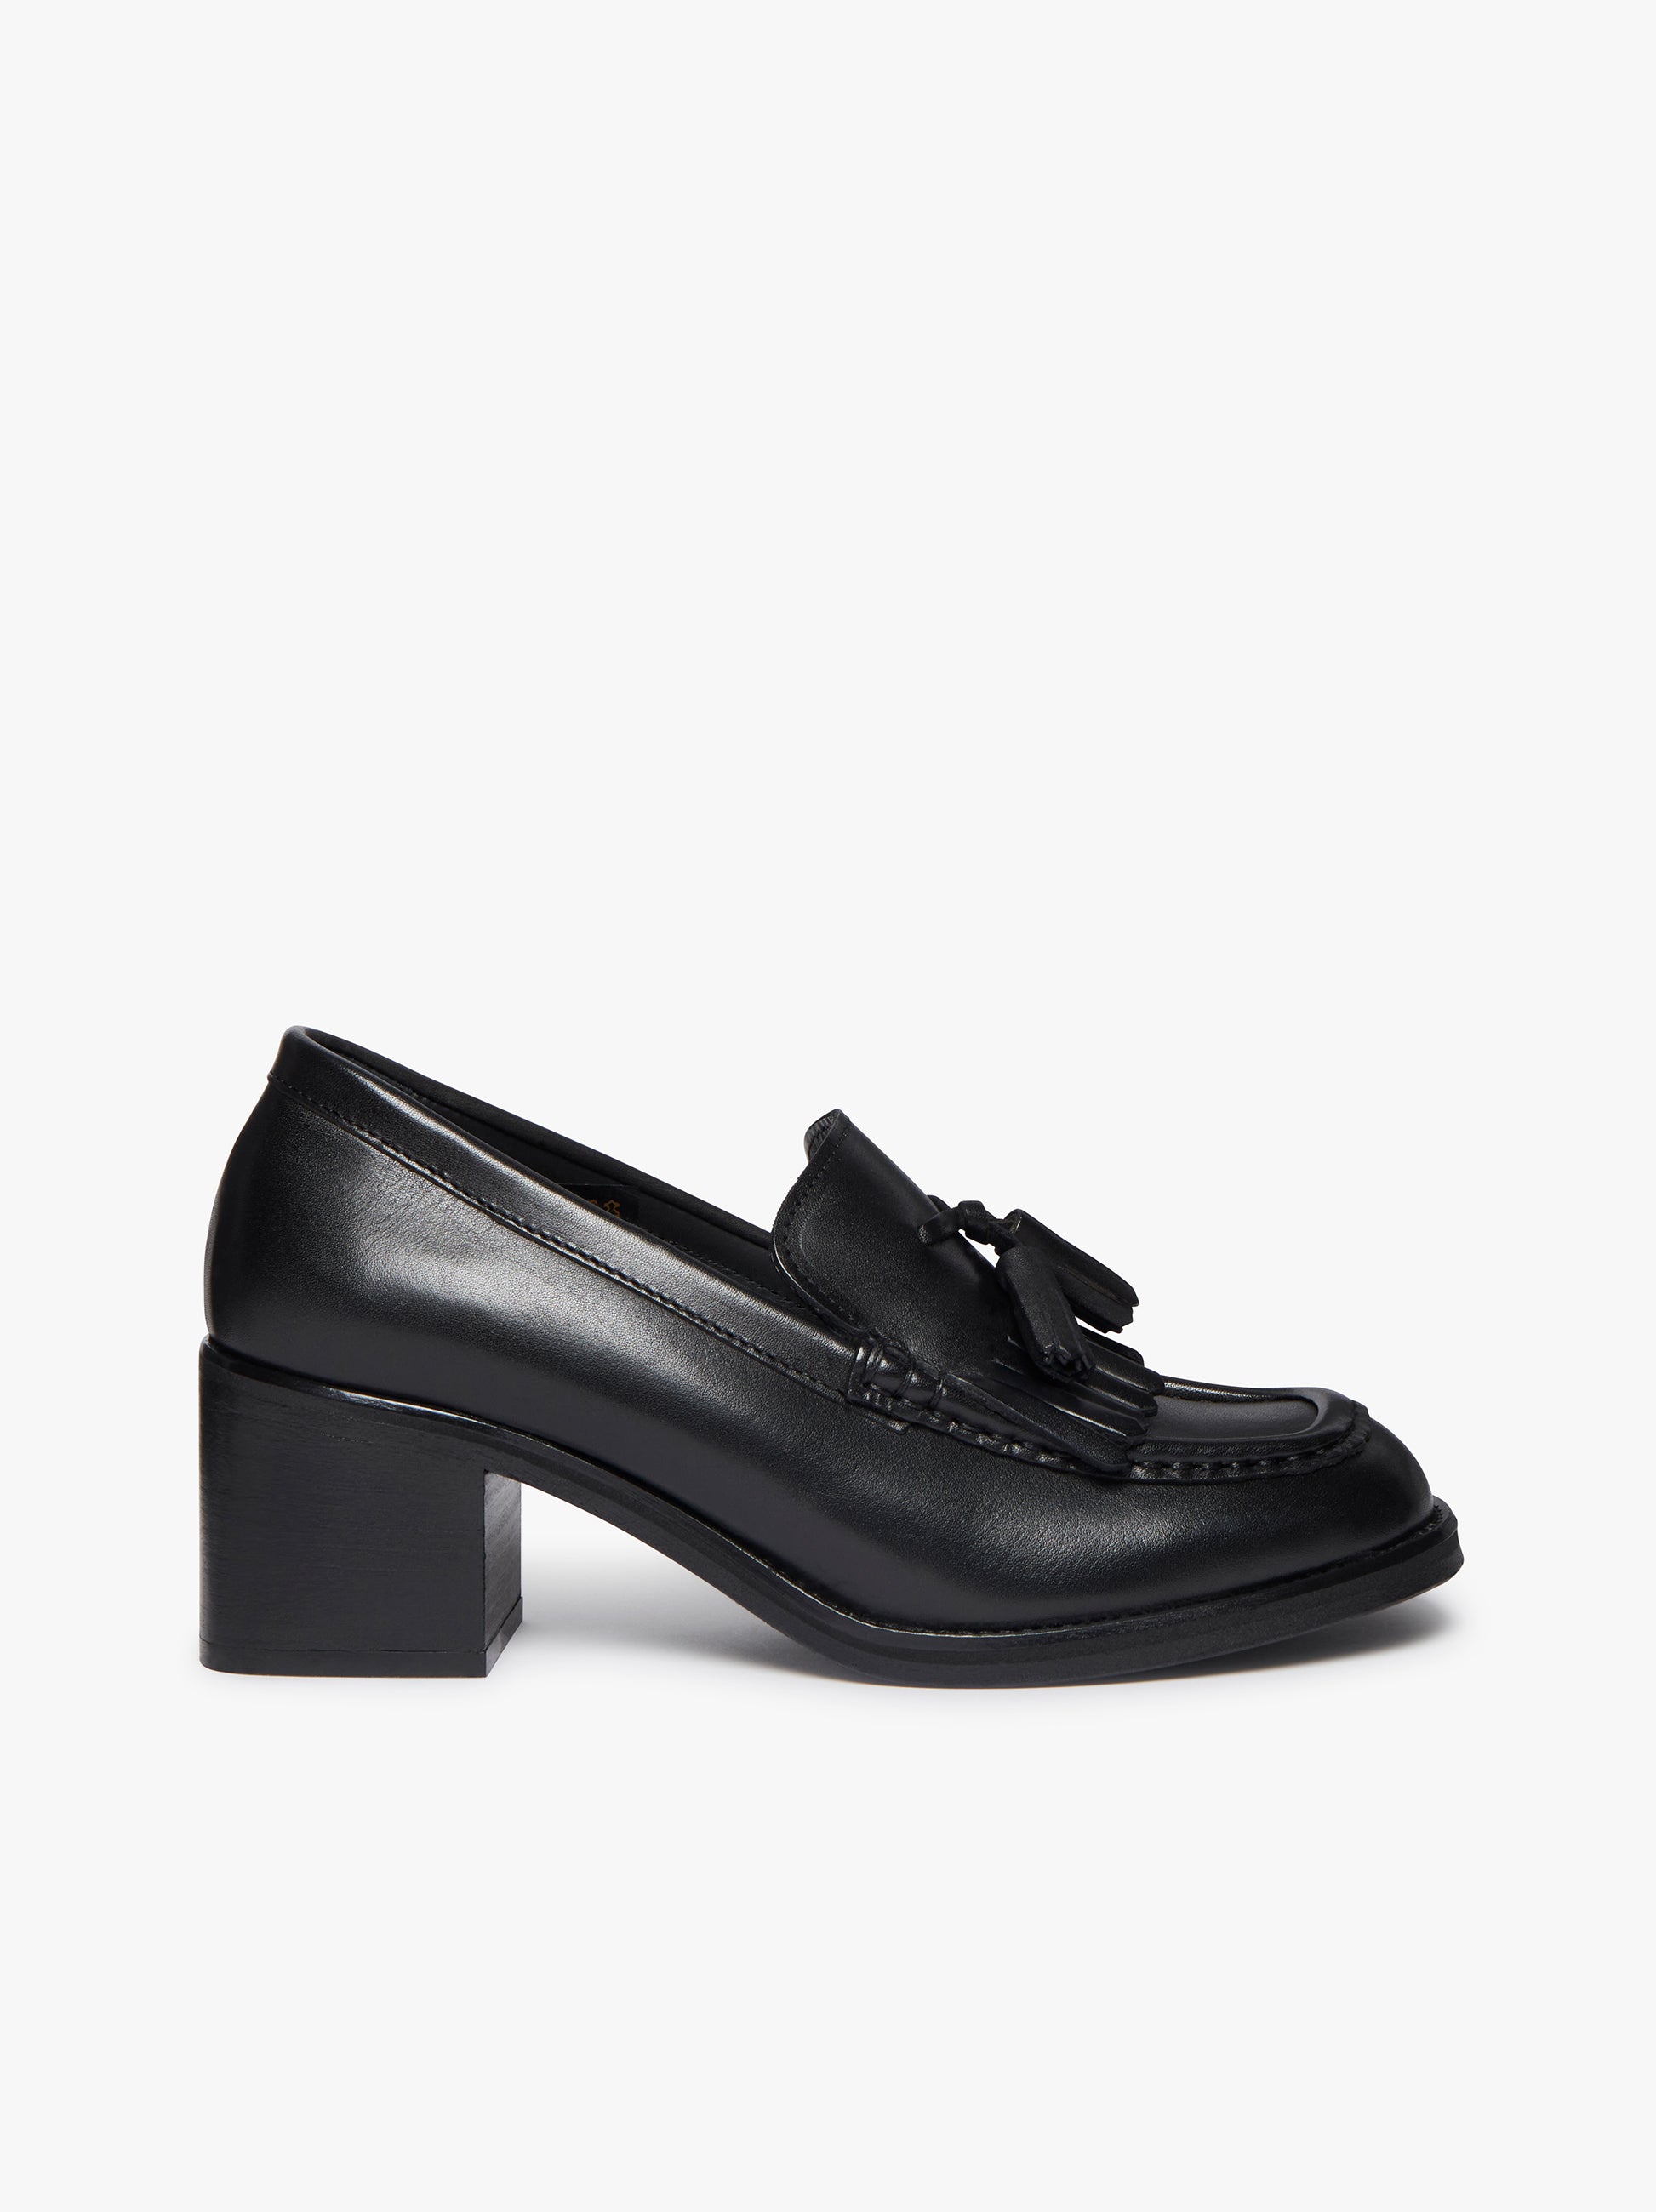 Tassel Shoes Womens Heels | Tassel Heels – G.H.BASS 1876